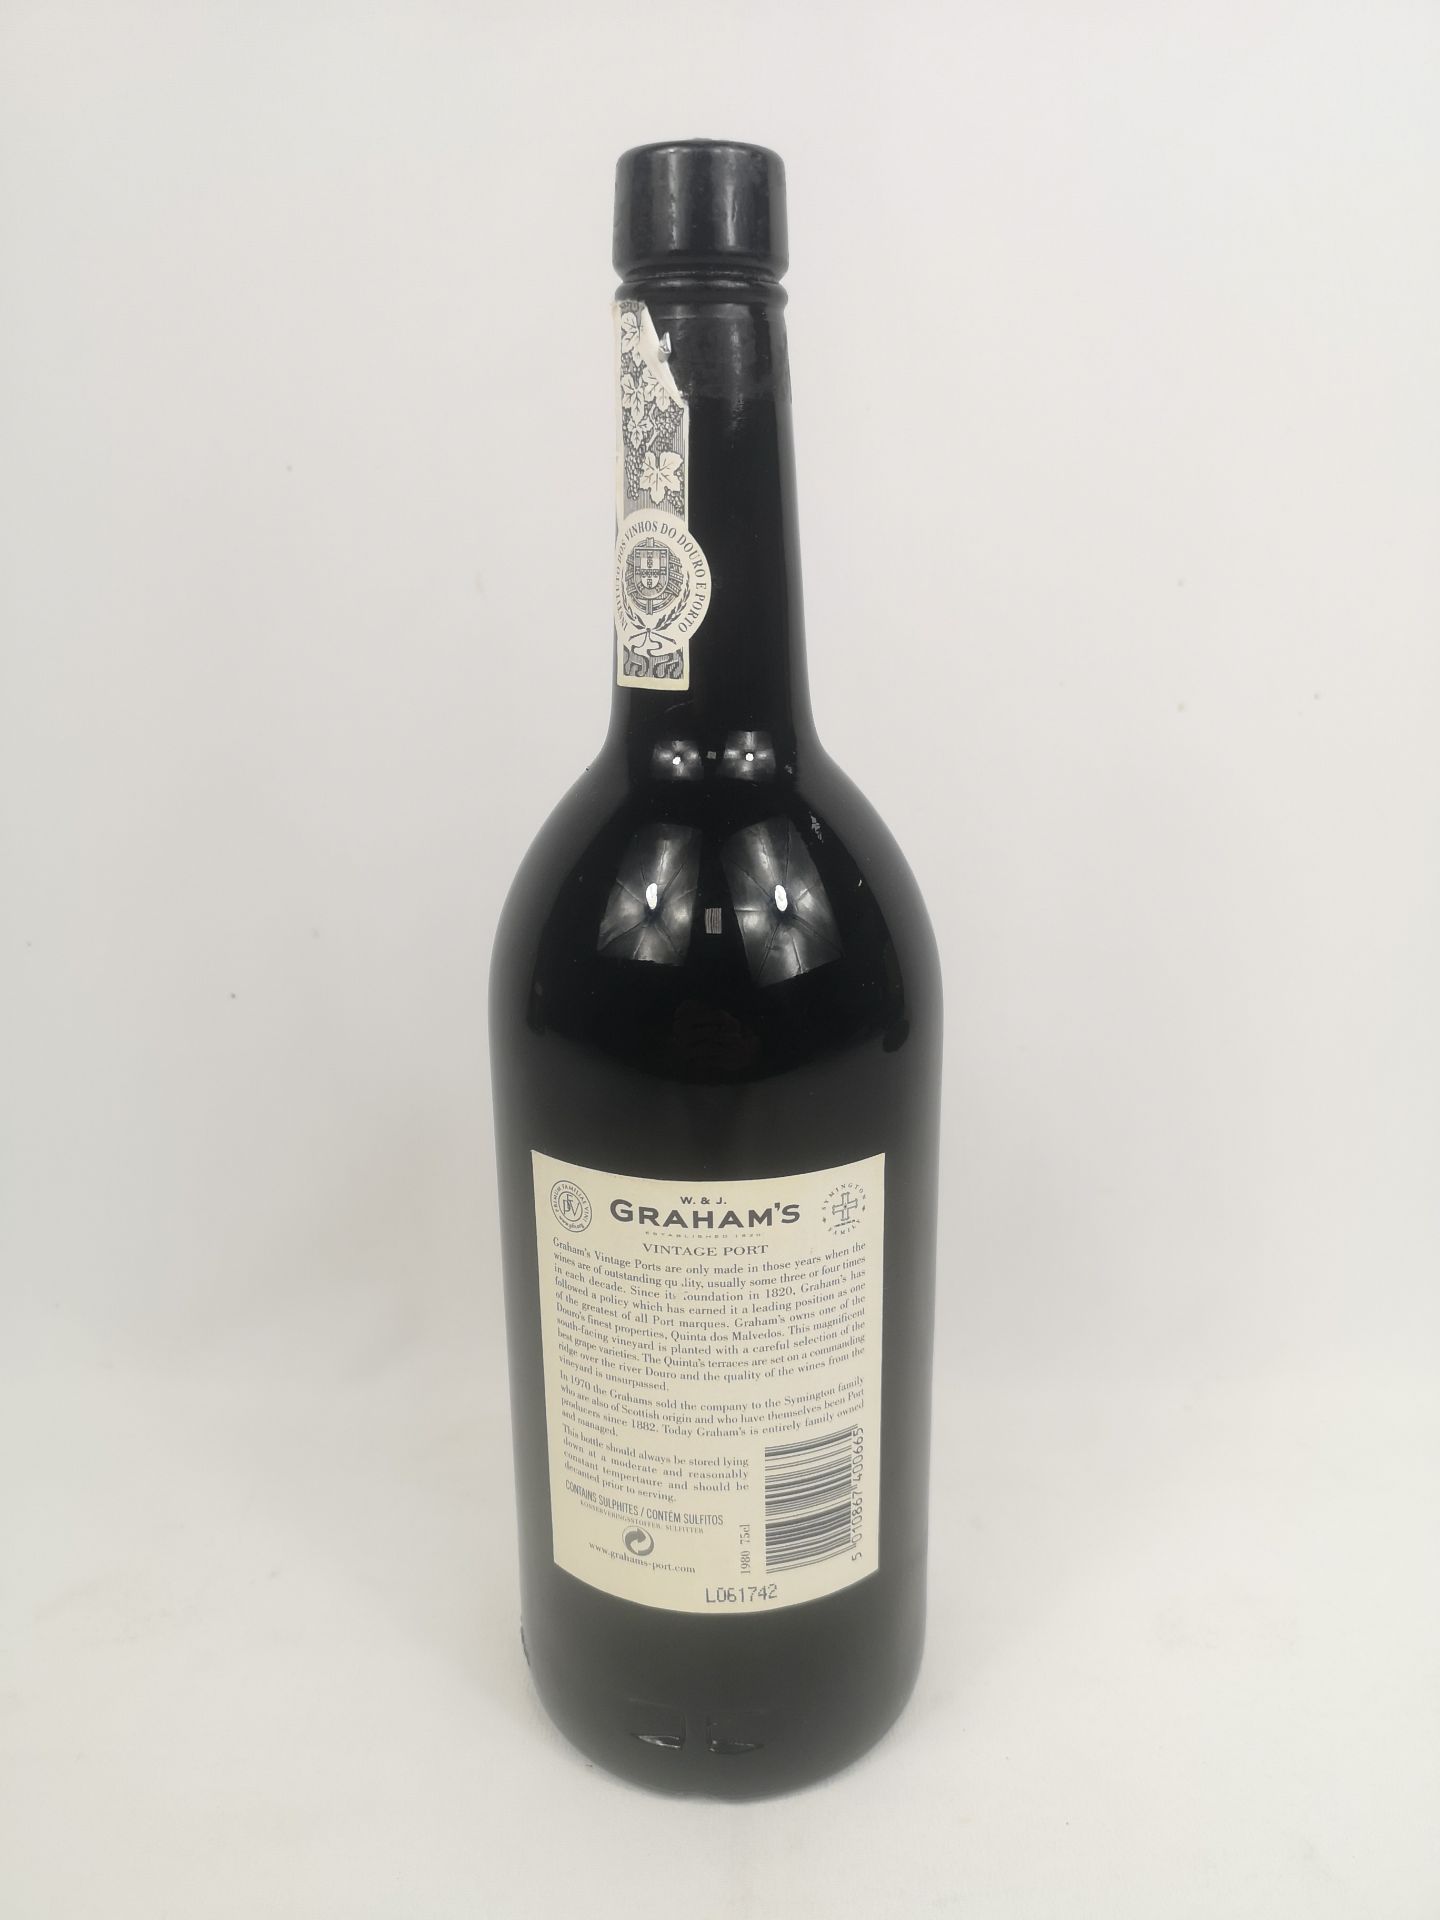 Bottle of Graham's 1980 vintage port - Image 3 of 3